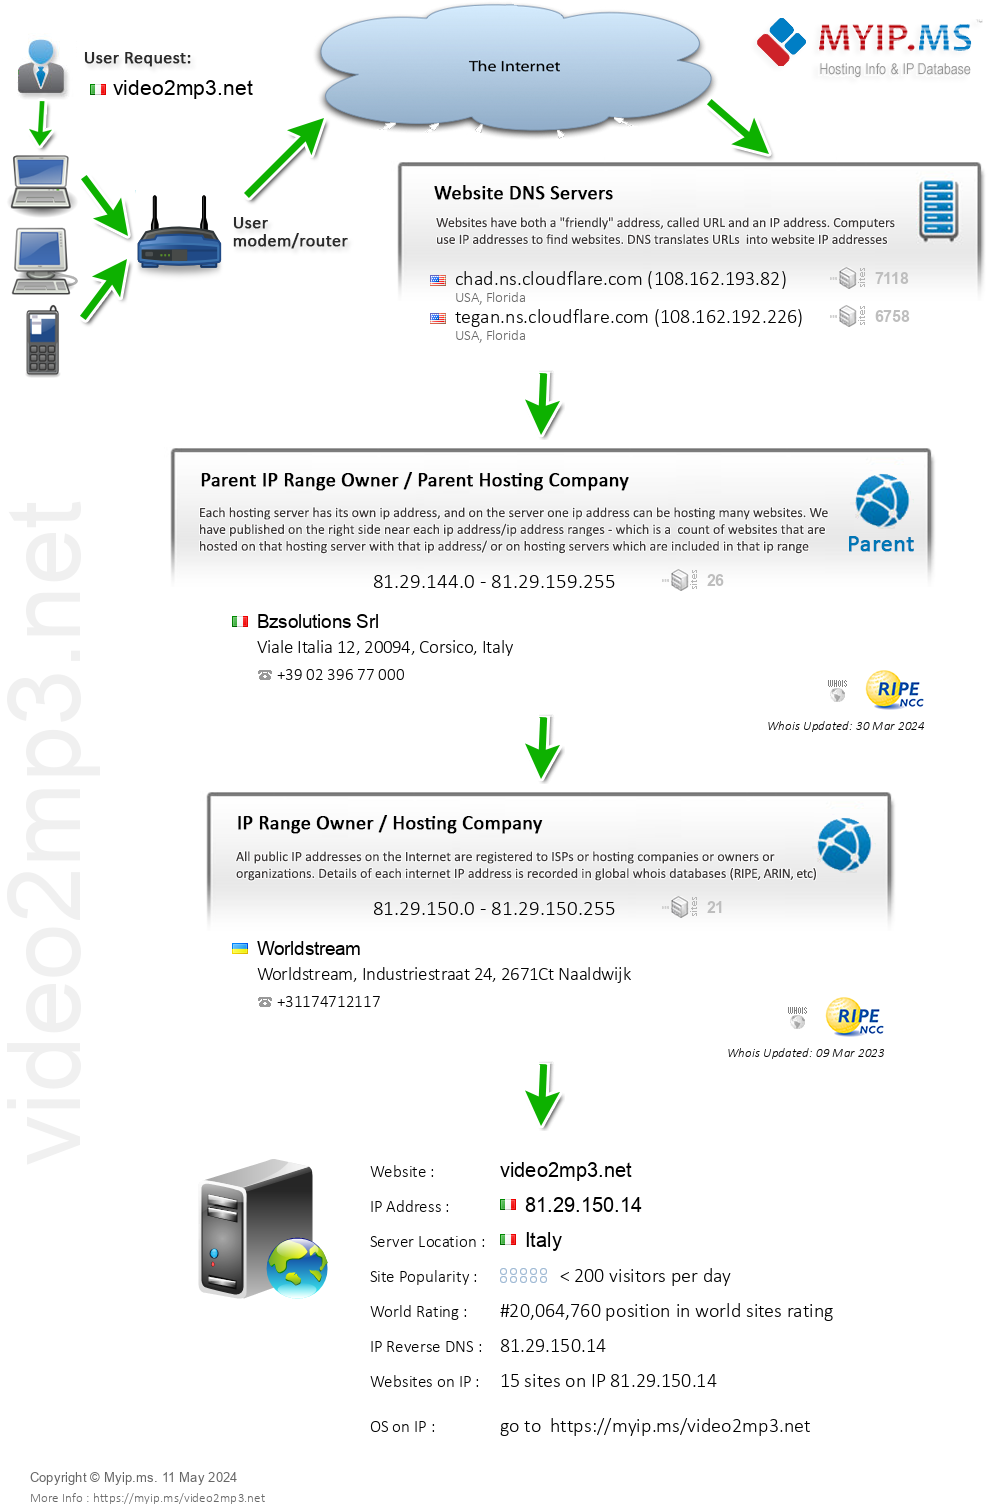 Video2mp3.net - Website Hosting Visual IP Diagram